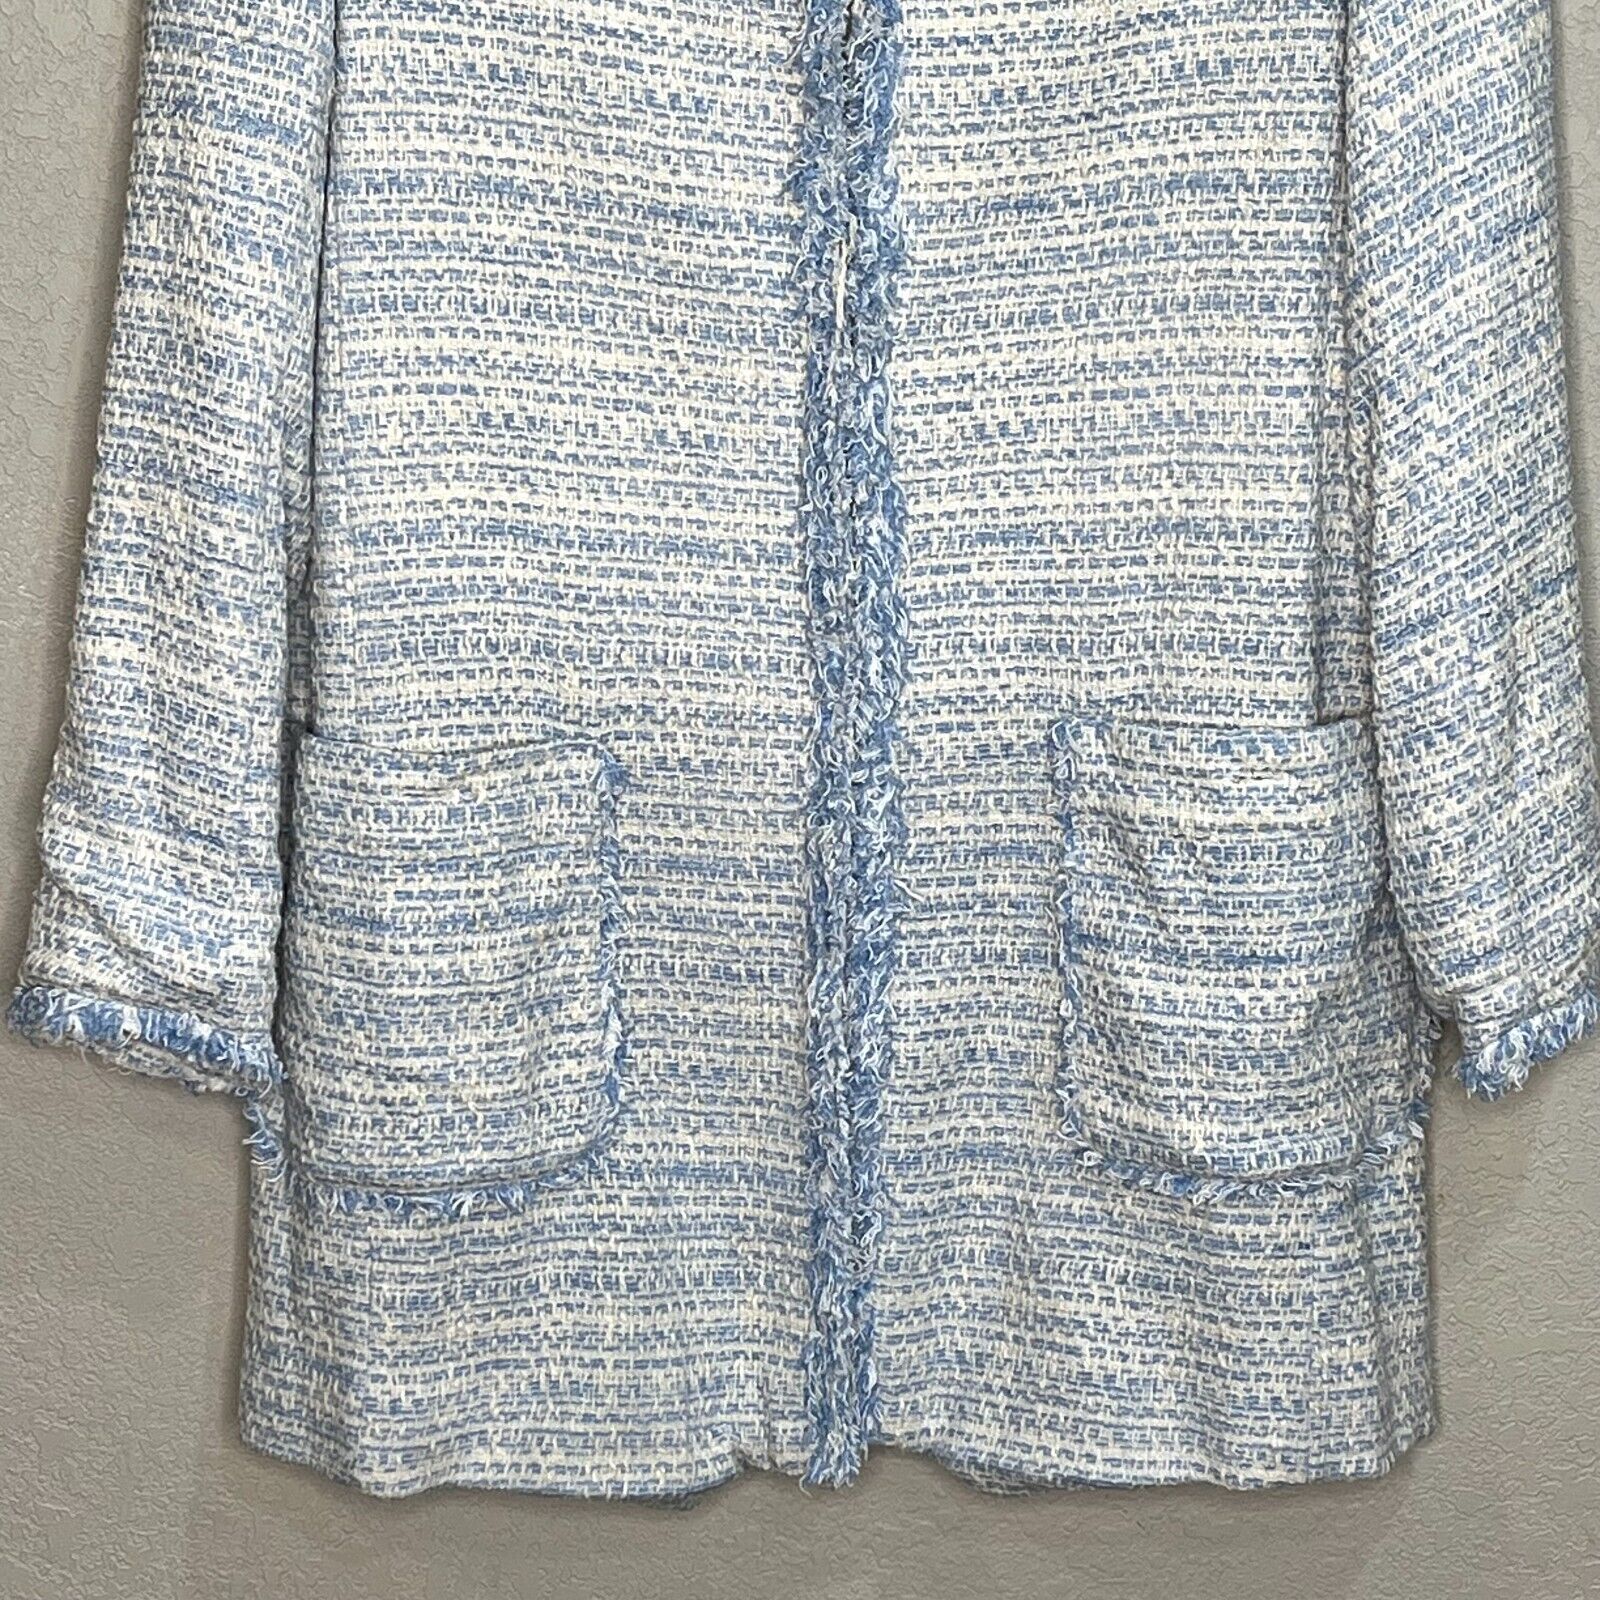 Zara Light Blue Ivory White Tweed Jacket Size Small